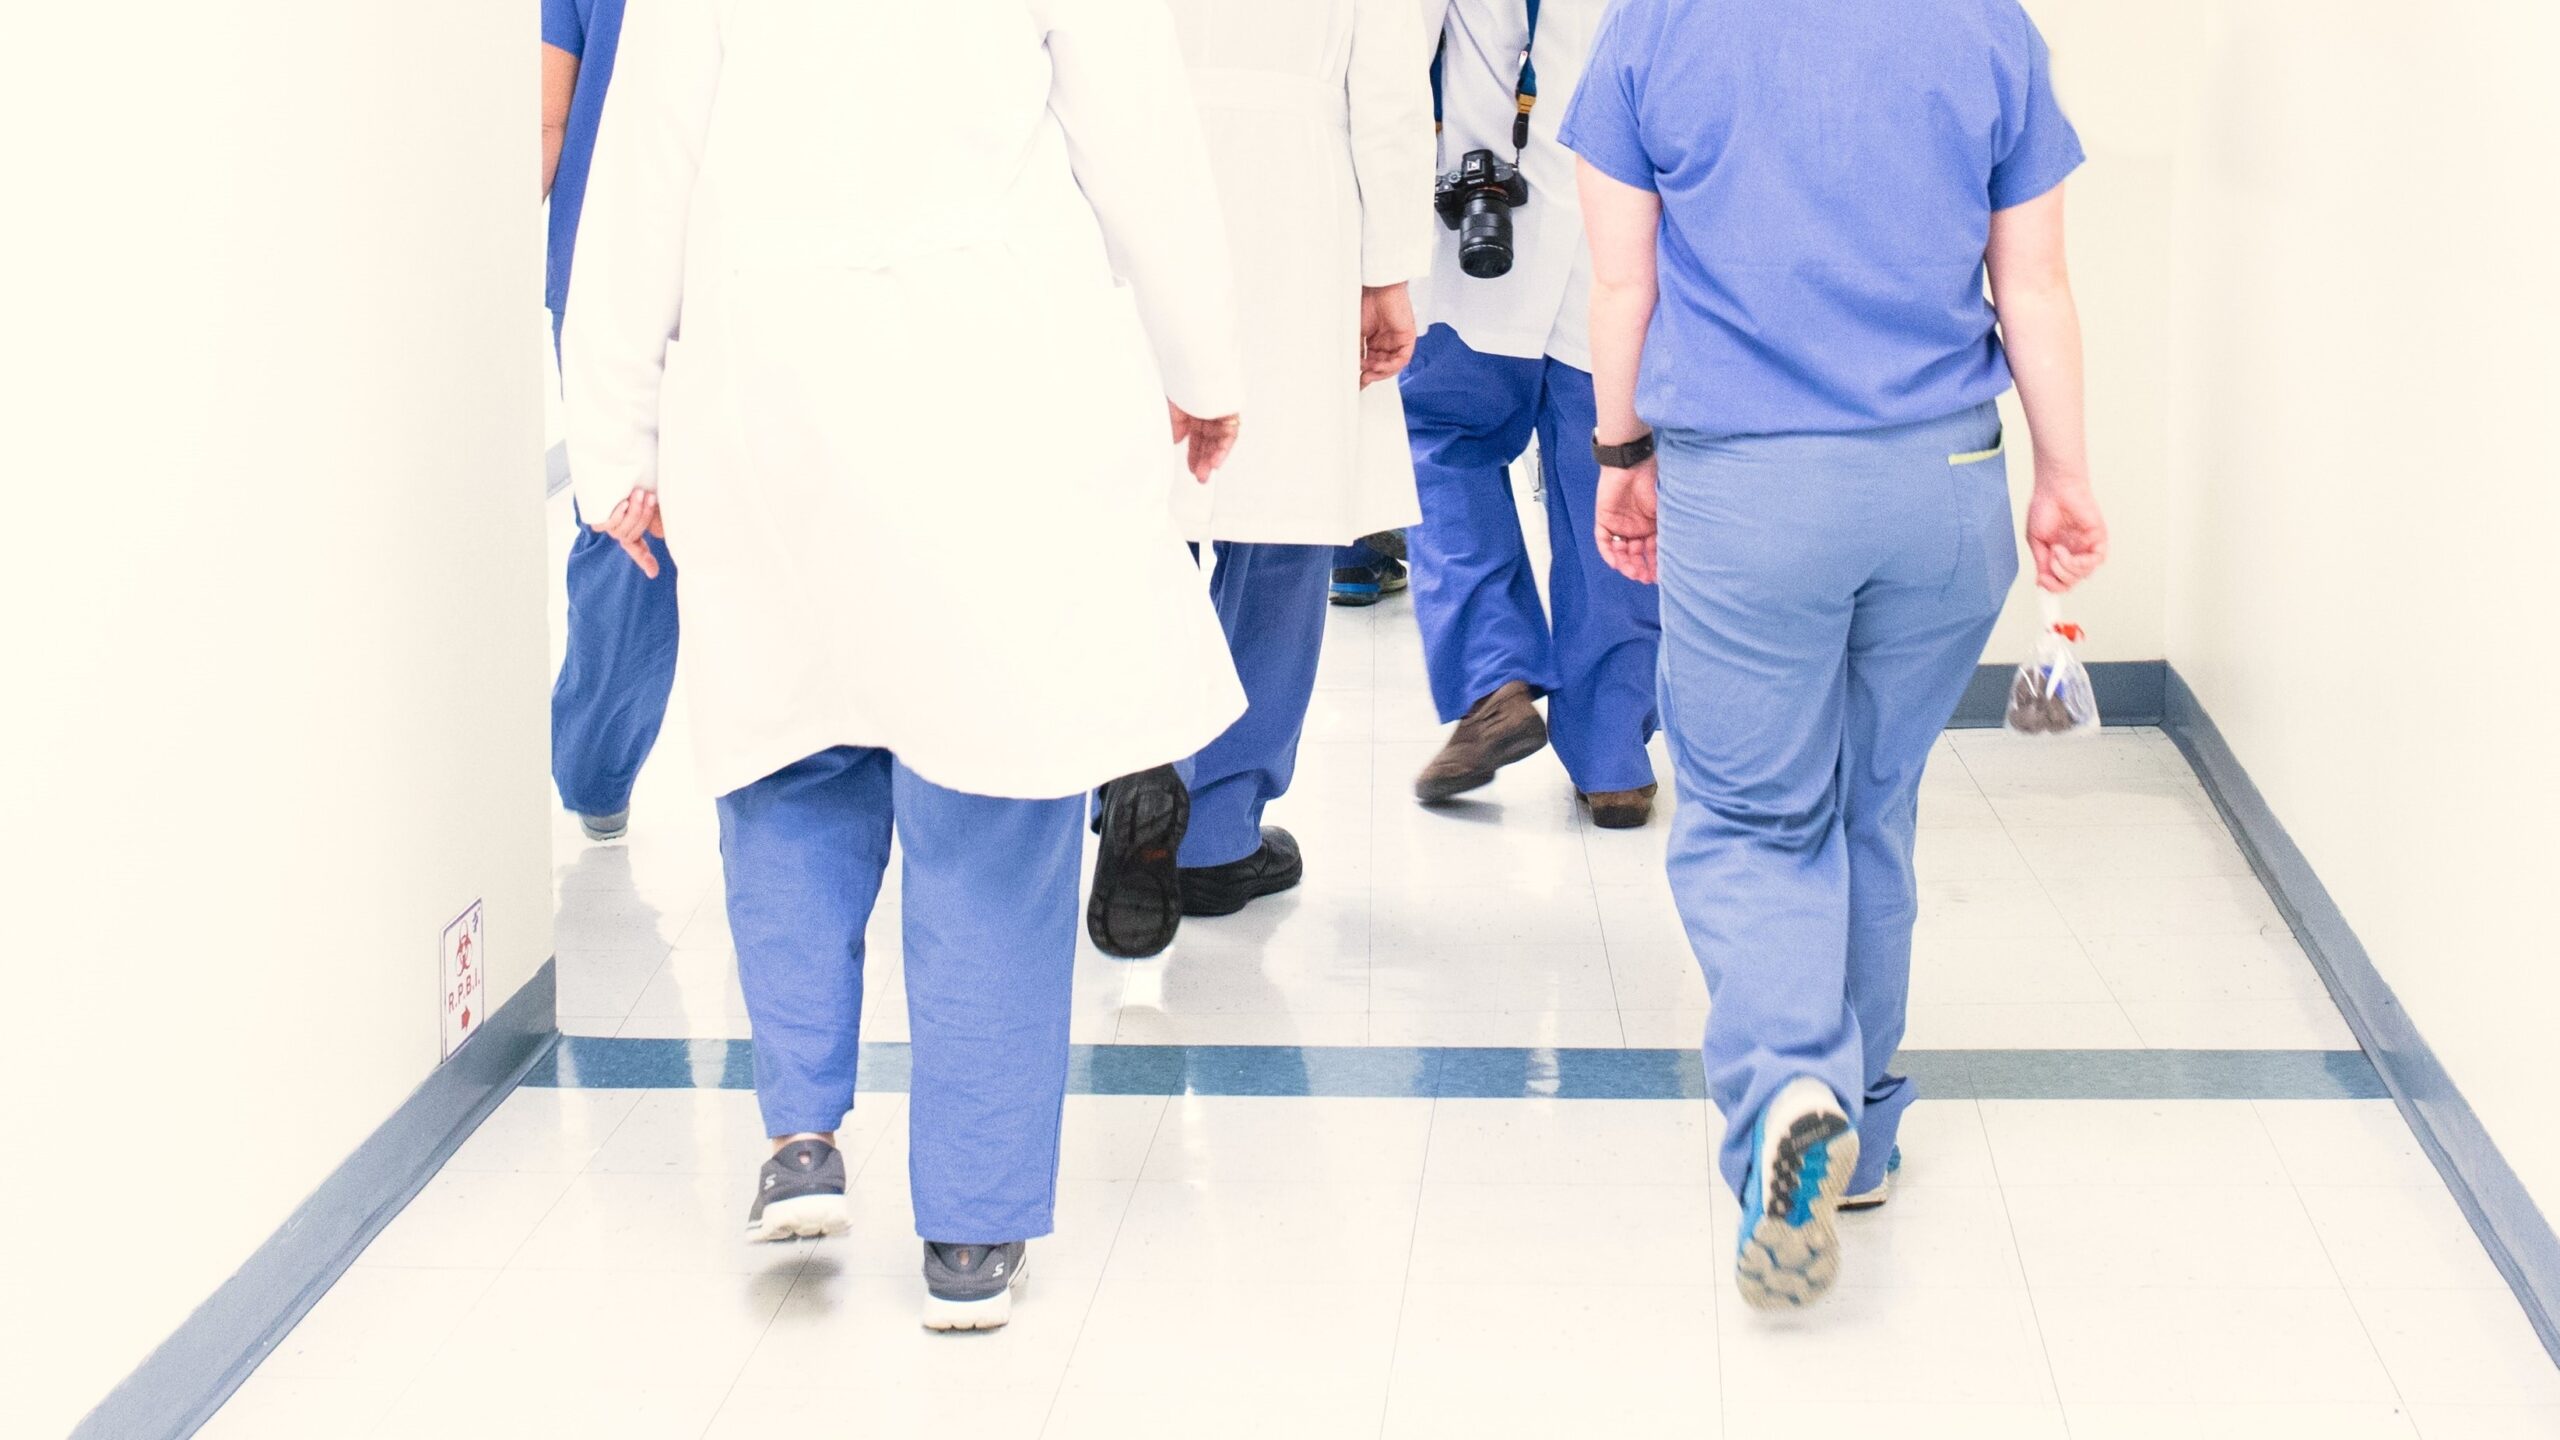 Bedürfnisse der Mitarbeitenden sollten im pflegerischen Arbeits­alltag berücksichtigt werden (KAP-Studie, Teil 4): Medizinisches Personal in Arbeitskleidung läuft durch einen Flur.